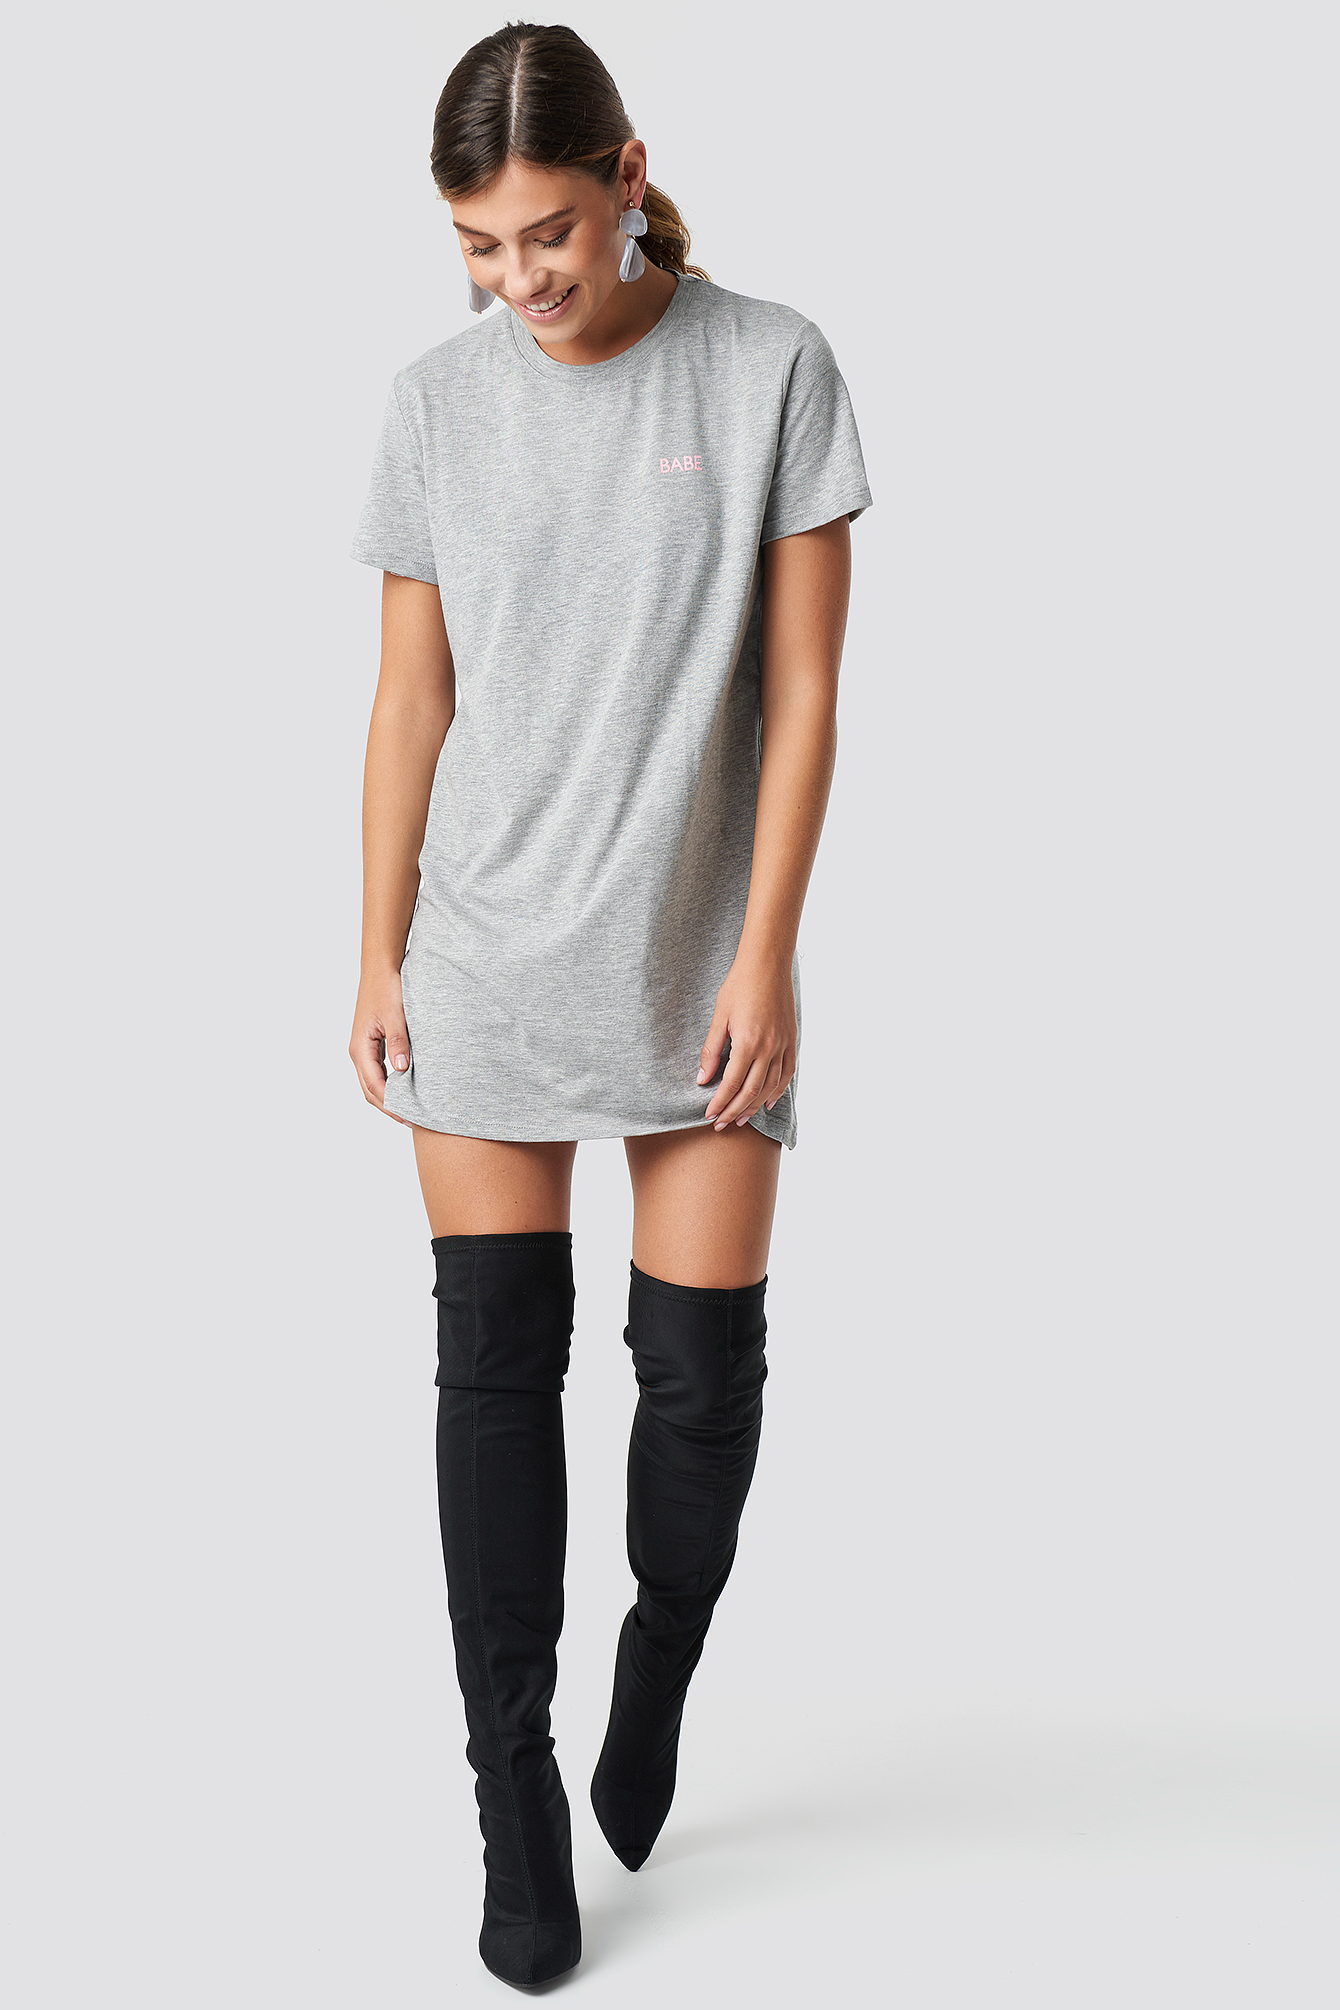 Grey NA-KD Babe T-shirt Dress